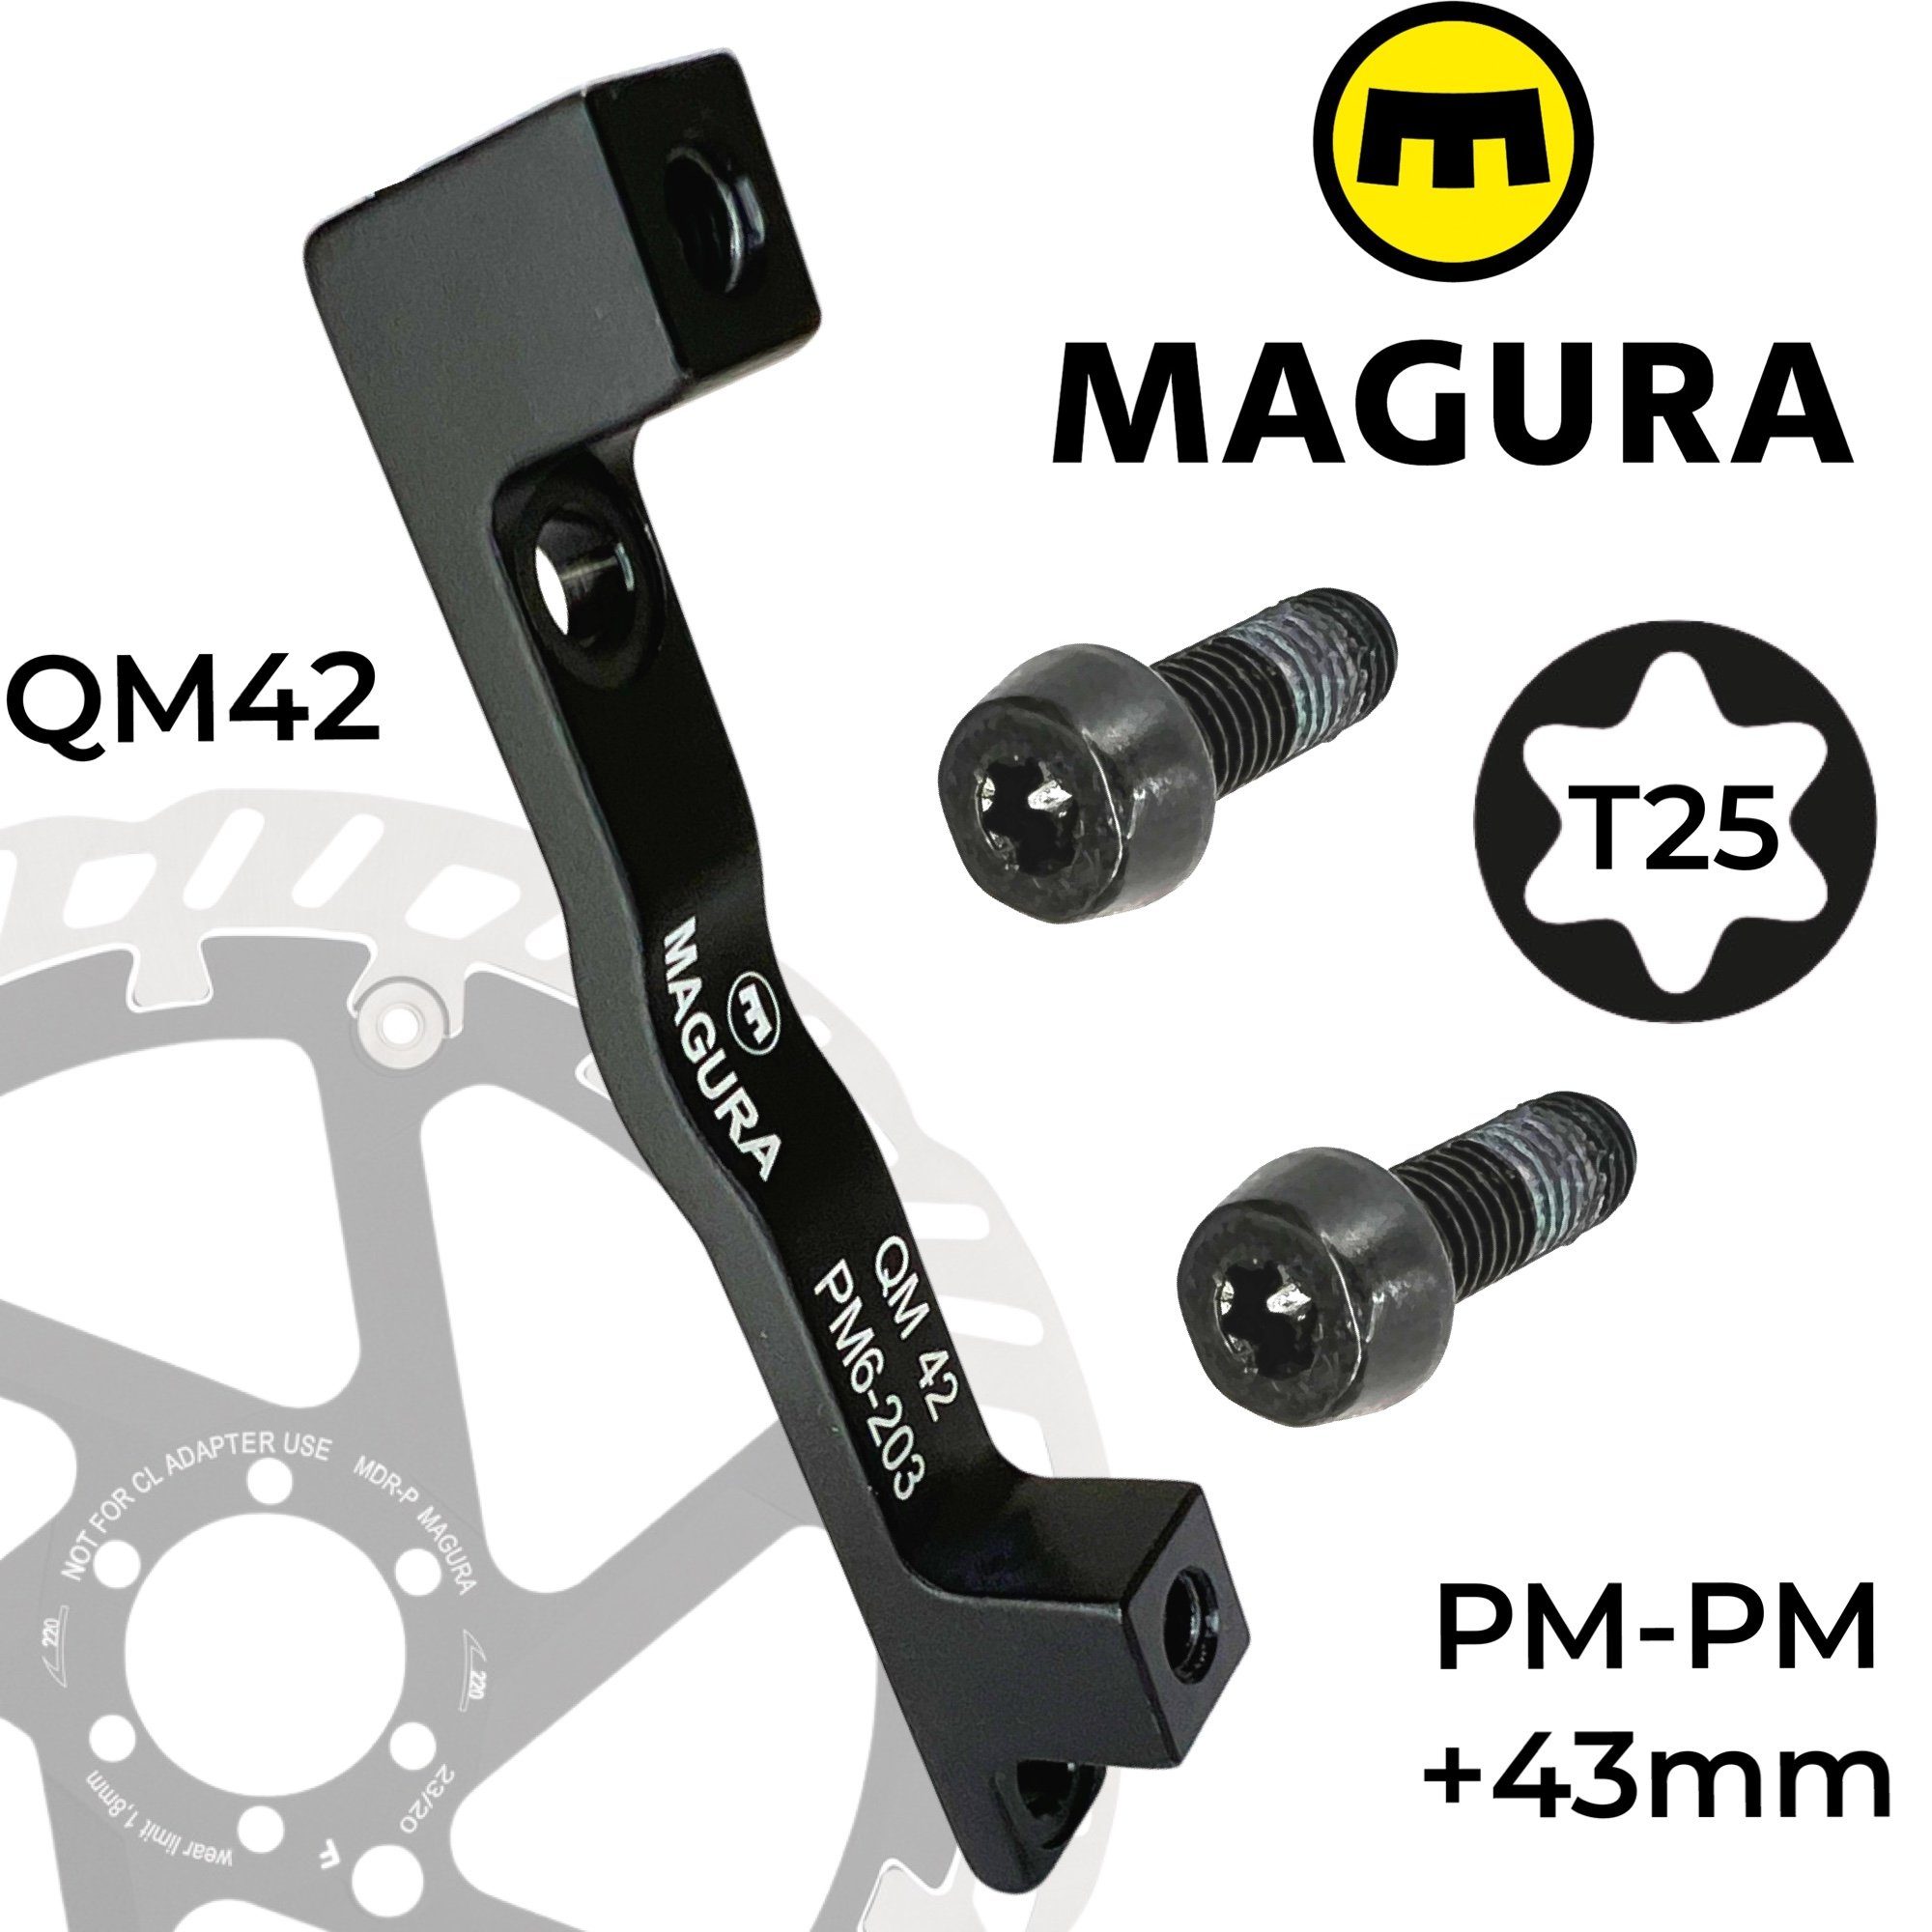 Magura Scheibenbremse Magura QM42 160-203 PM Bremsscheiben Adapter +43mm